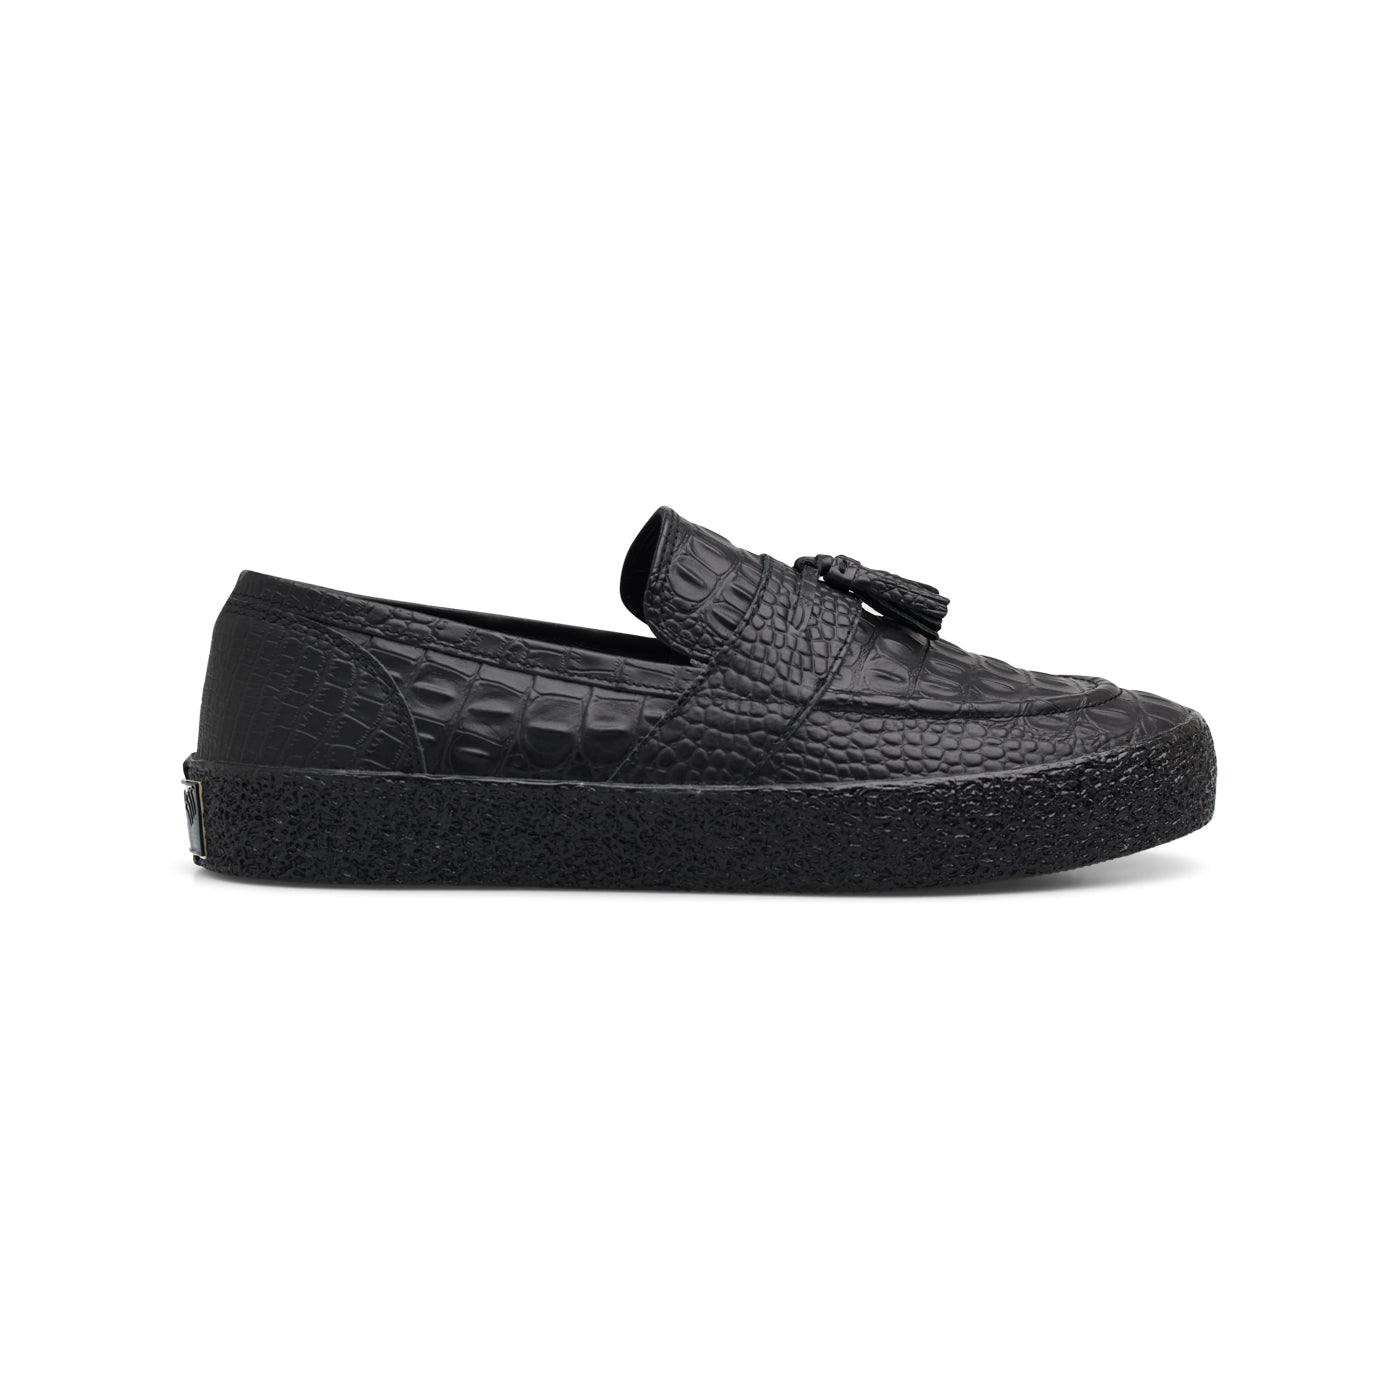 VM005-Loafer Leather (Croc Black/Black) – Last Resort AB